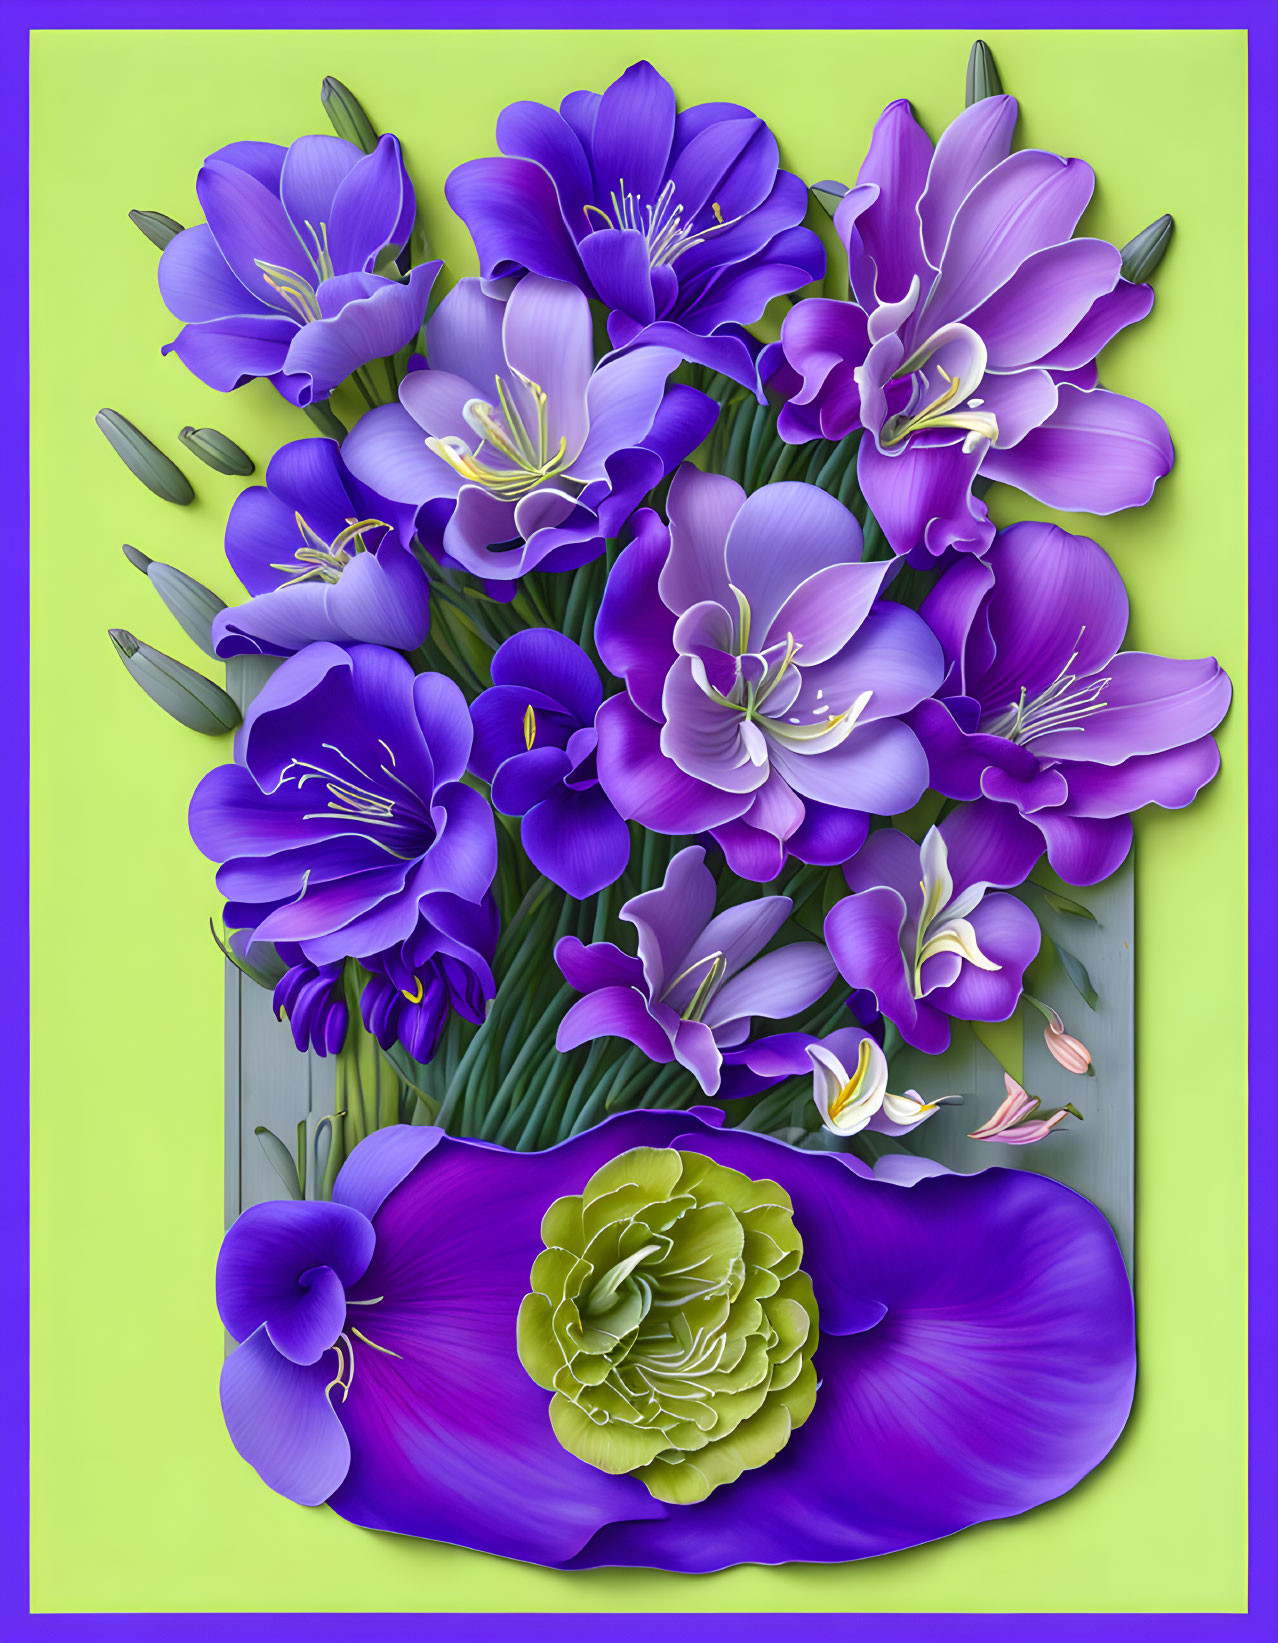 Violet hued flowers